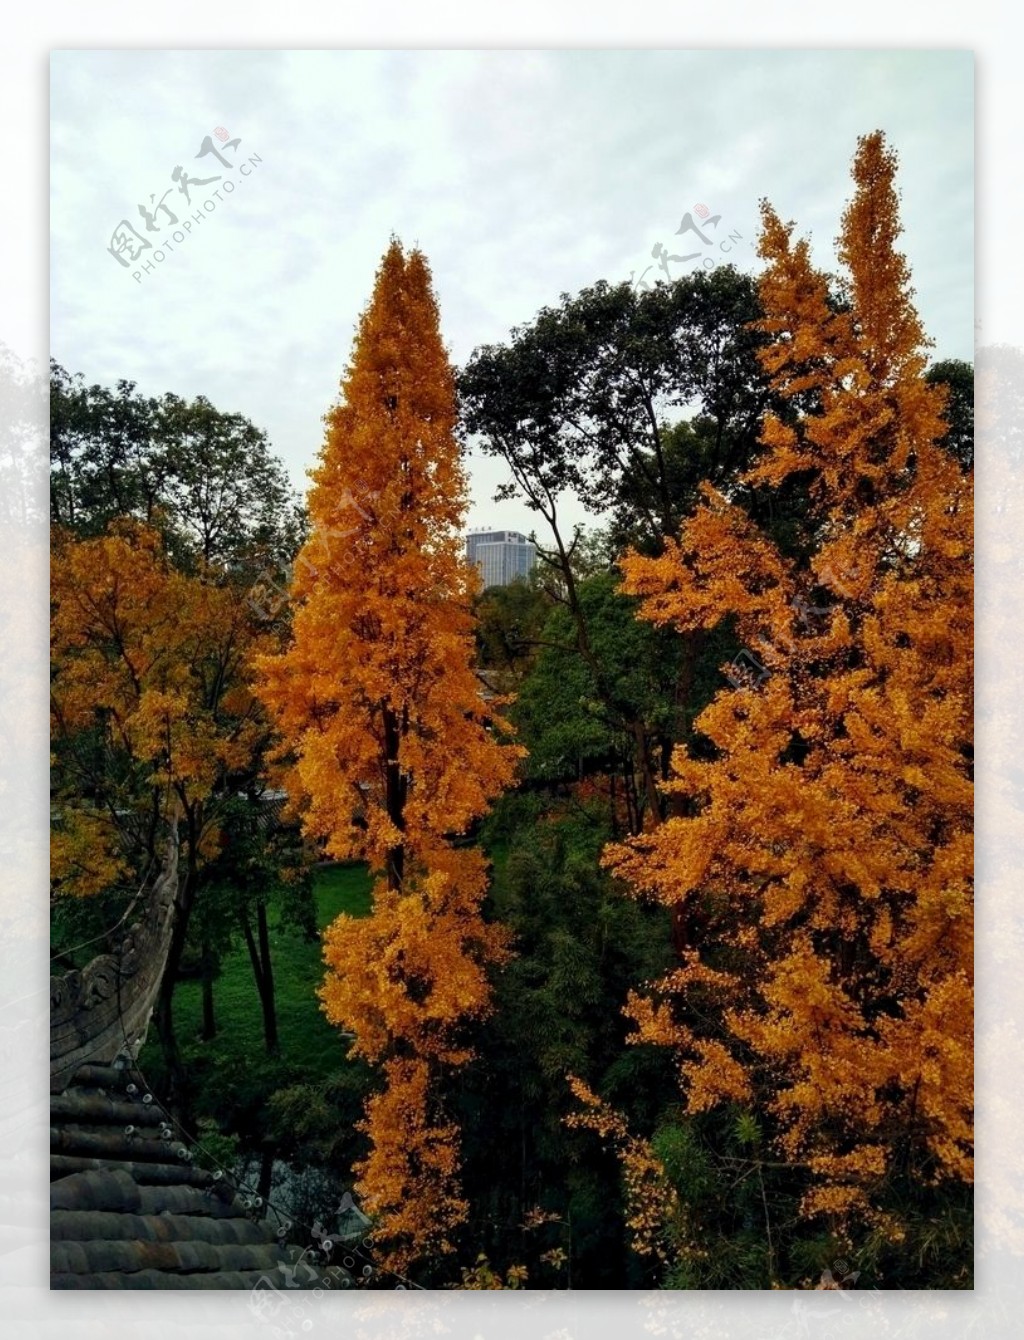 俯视大树银杏树黄叶树顶